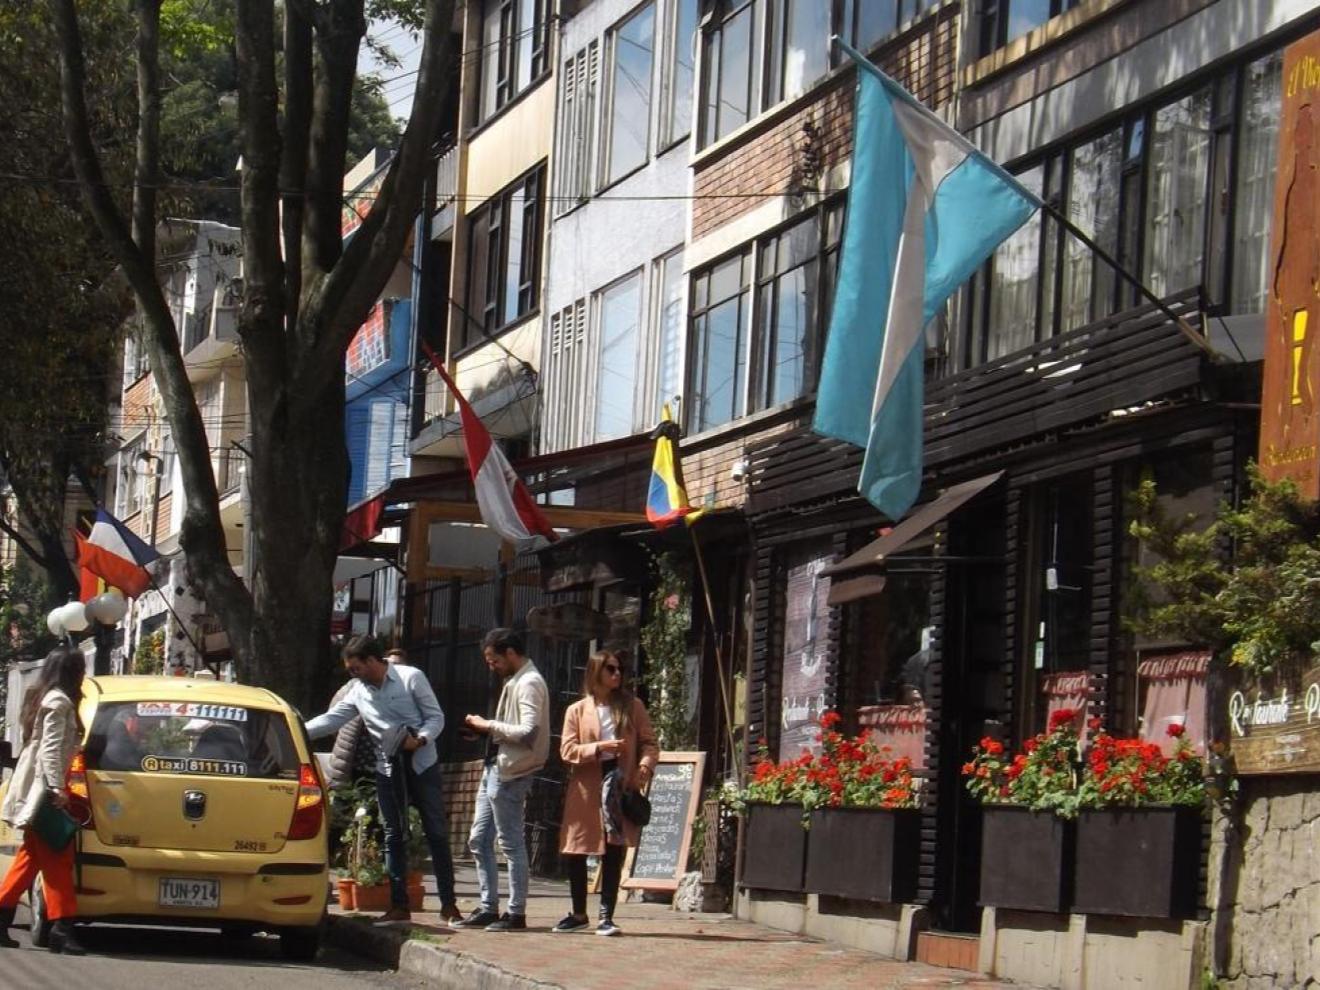 Calle comercial del barrio La Macarena, Bogotá, que ofrece una amplia oferta de gastronomía internacional Foto recuperada en https://www.colture.co/bogota/where-to-stay-in-bogota/neighborhoods-in-bogota/la-macarena-bogota/